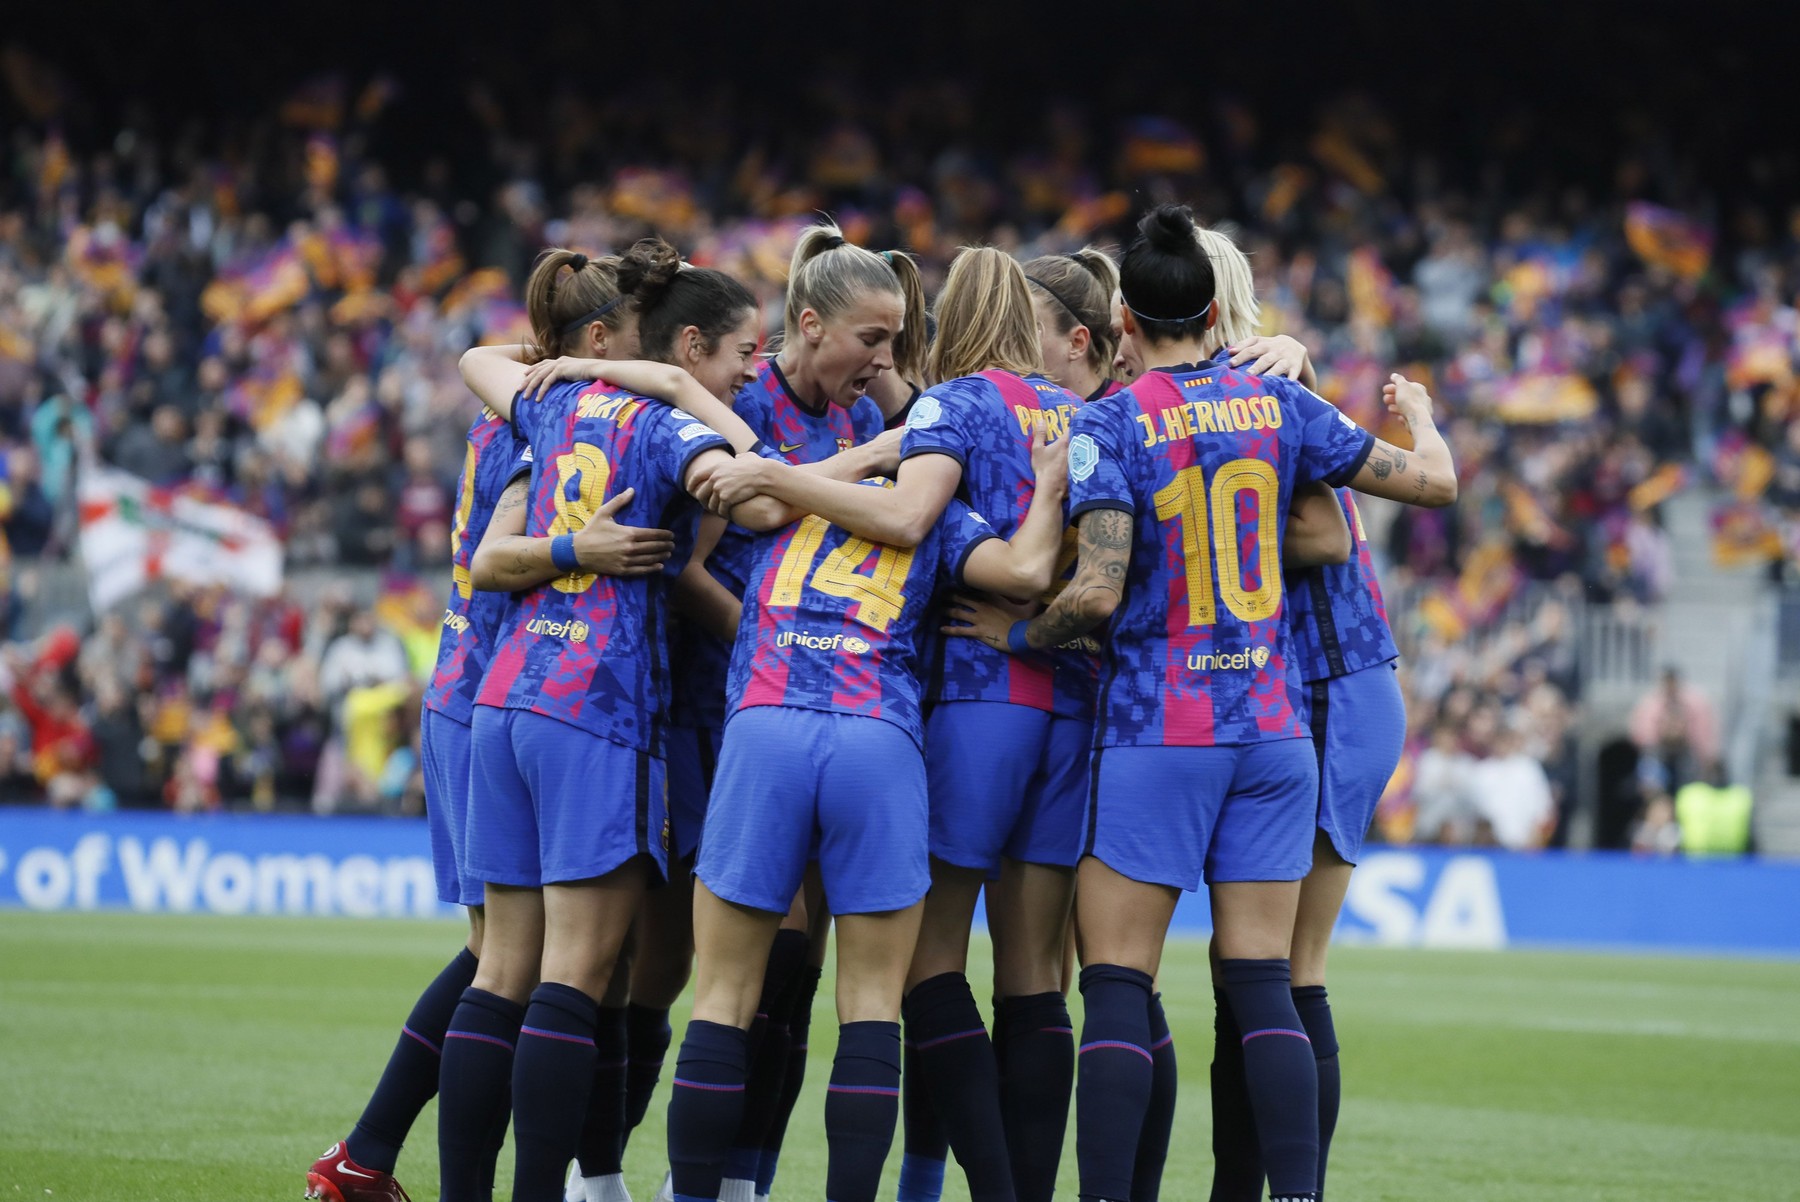 Echipa feminină a Barcelonei continuă să scrie istorie! Număr record de spectatori stabilit la meciul cu Wolfsburg